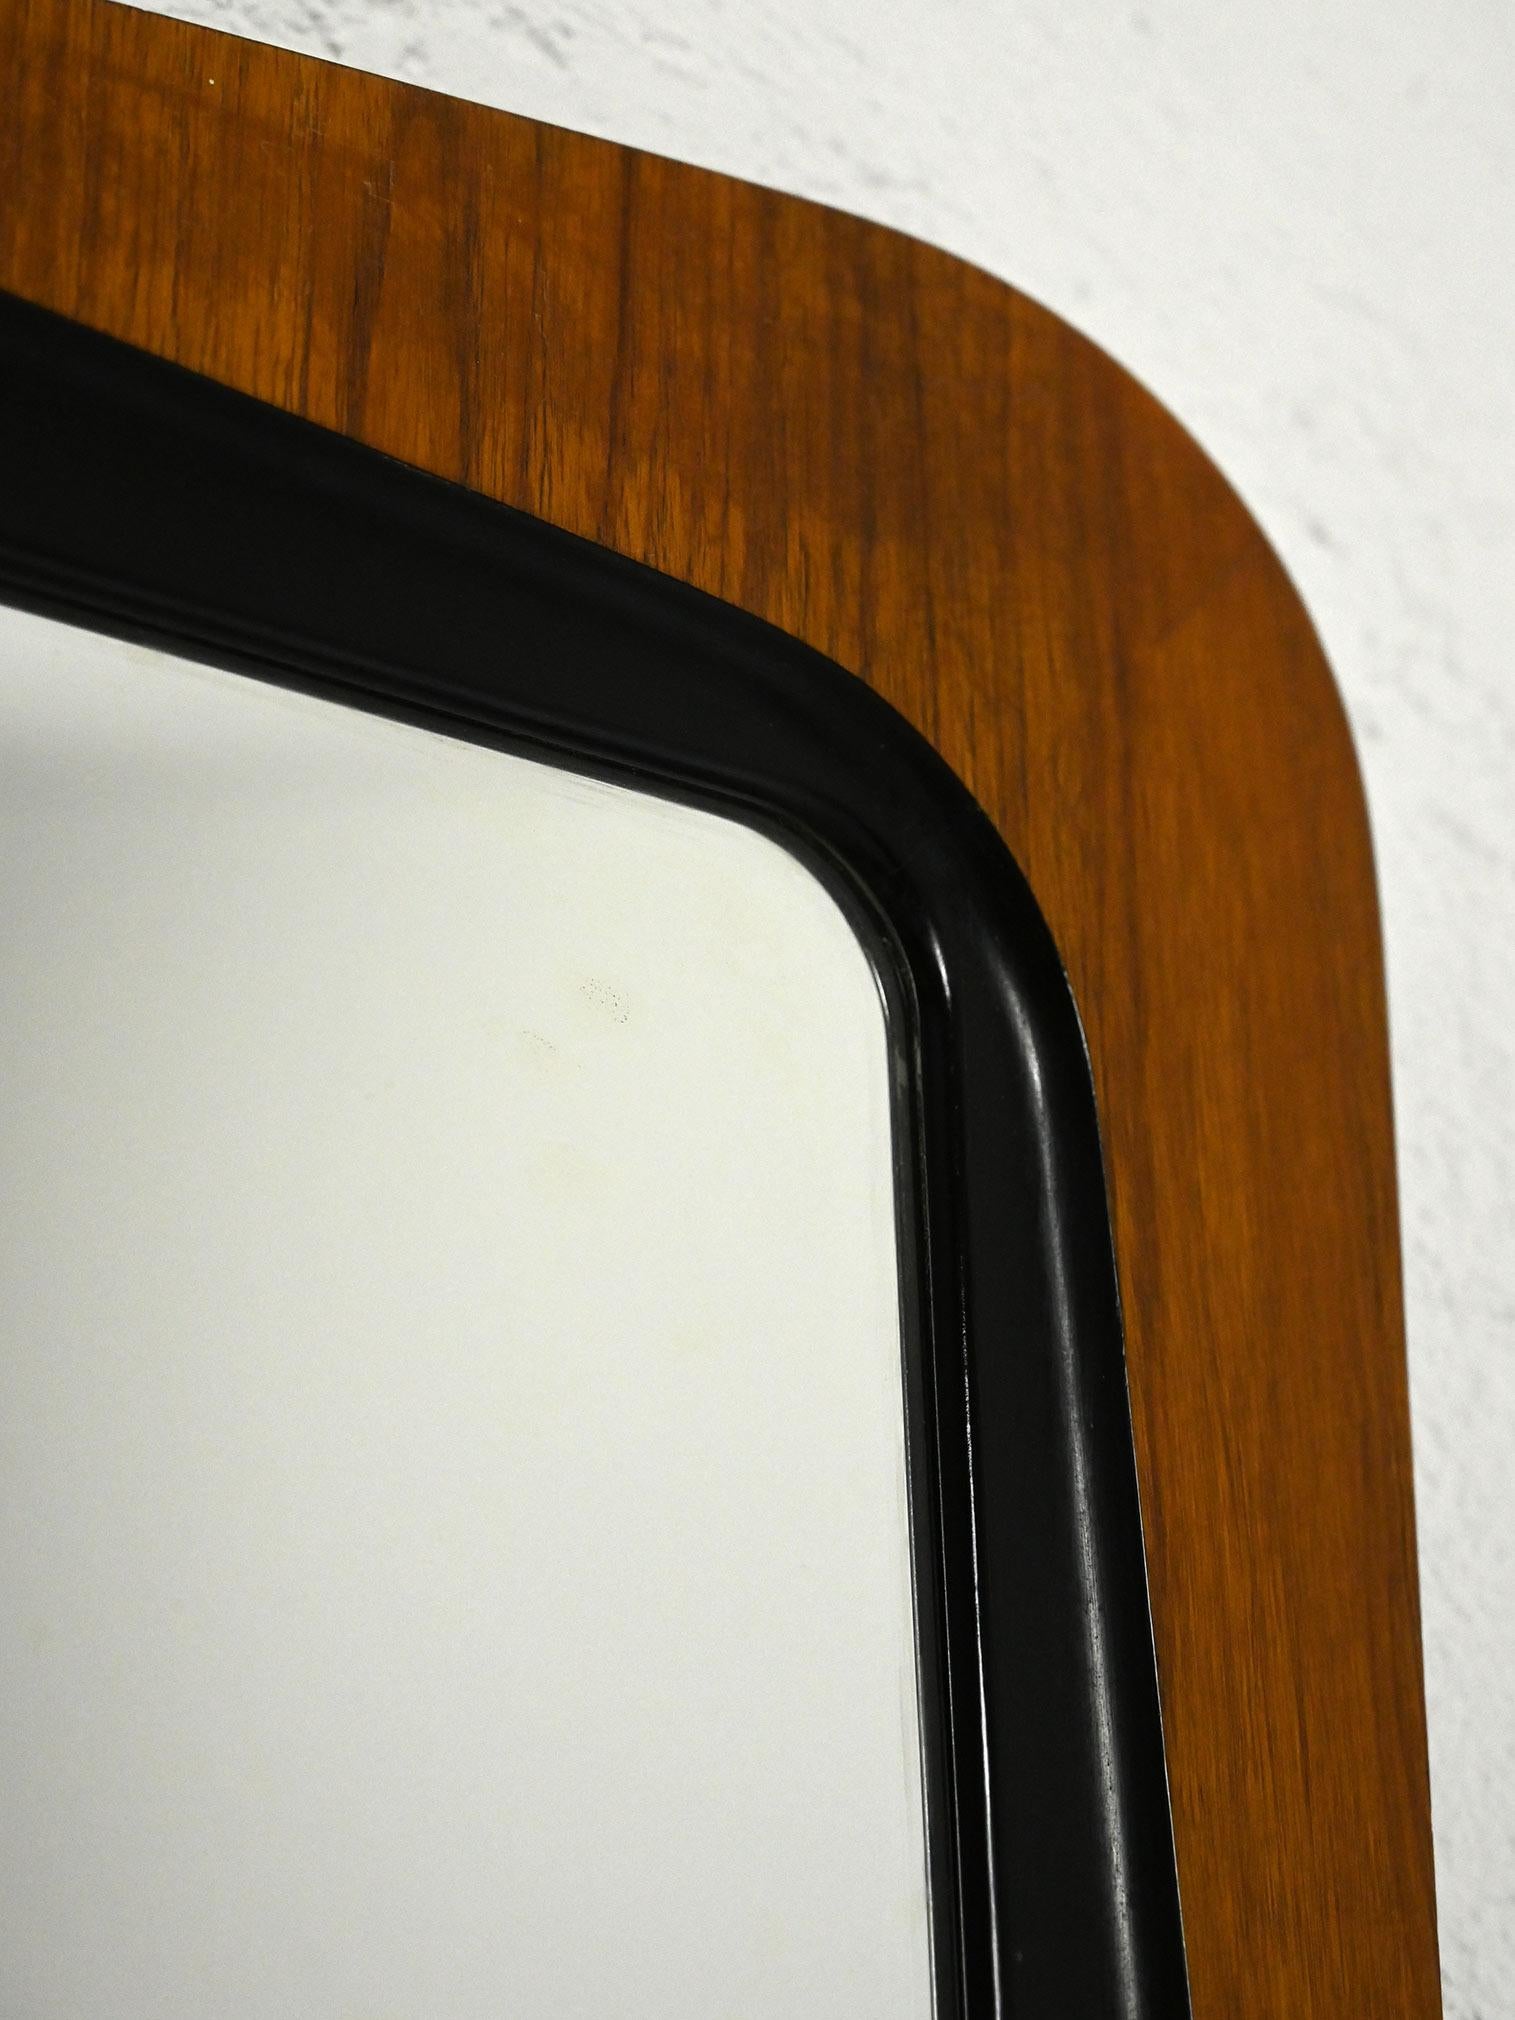 Miroir scandinave vintage des années 1960.

Miroir vintage scandinave encadré de teck avec une forme distinctive, légèrement en saillie, et de petite taille. Le détail distinctif du cadre est accentué par un contour noir autour du miroir, ajoutant